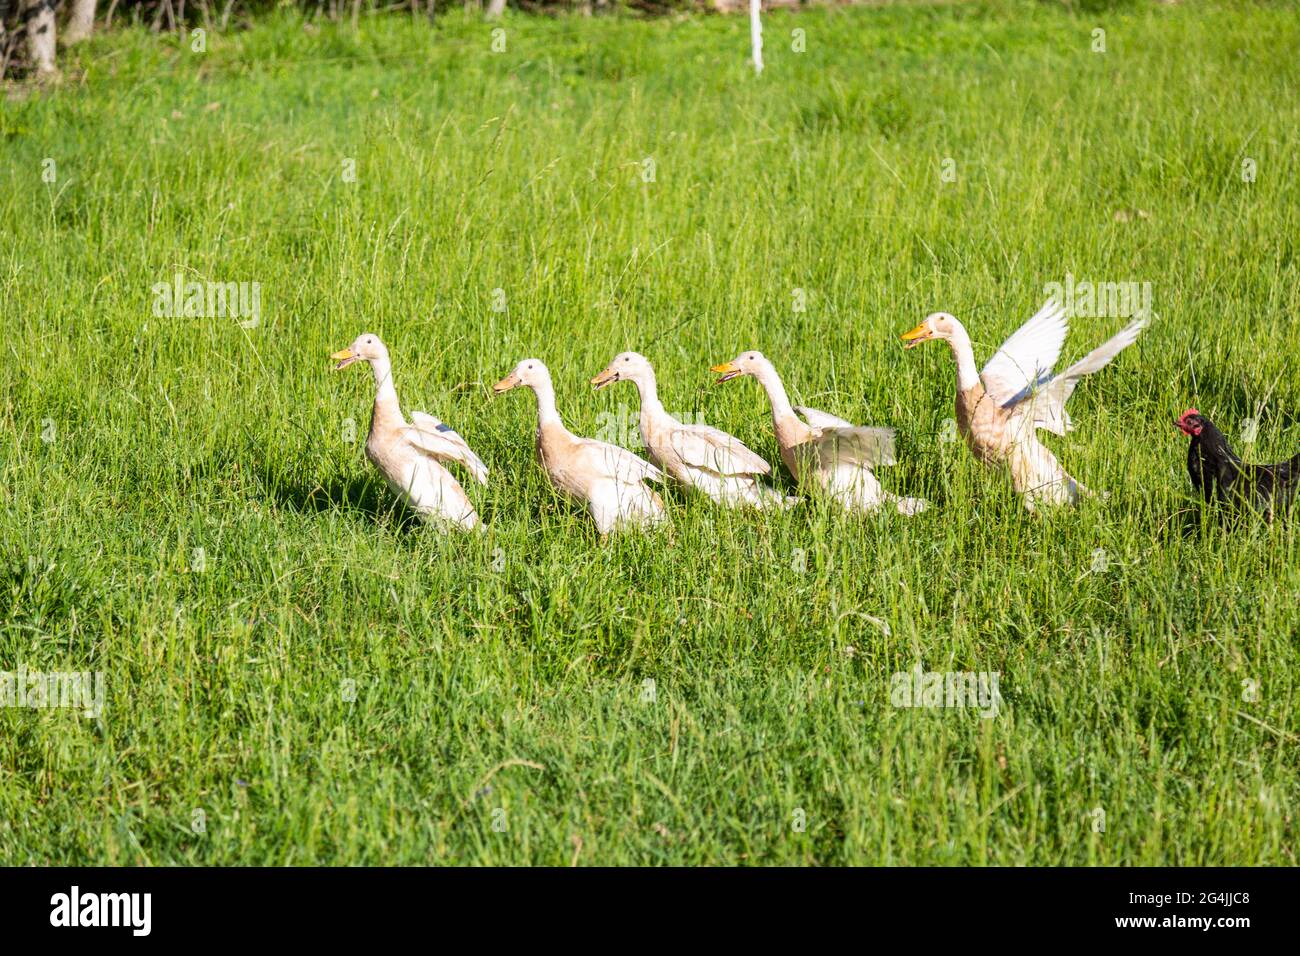 Un poulet noir suit cinq canards blancs de race indienne à travers la grande herbe de leur ferme biologique du comté de DeKalb près de Spencerville, Indiana, États-Unis. Banque D'Images